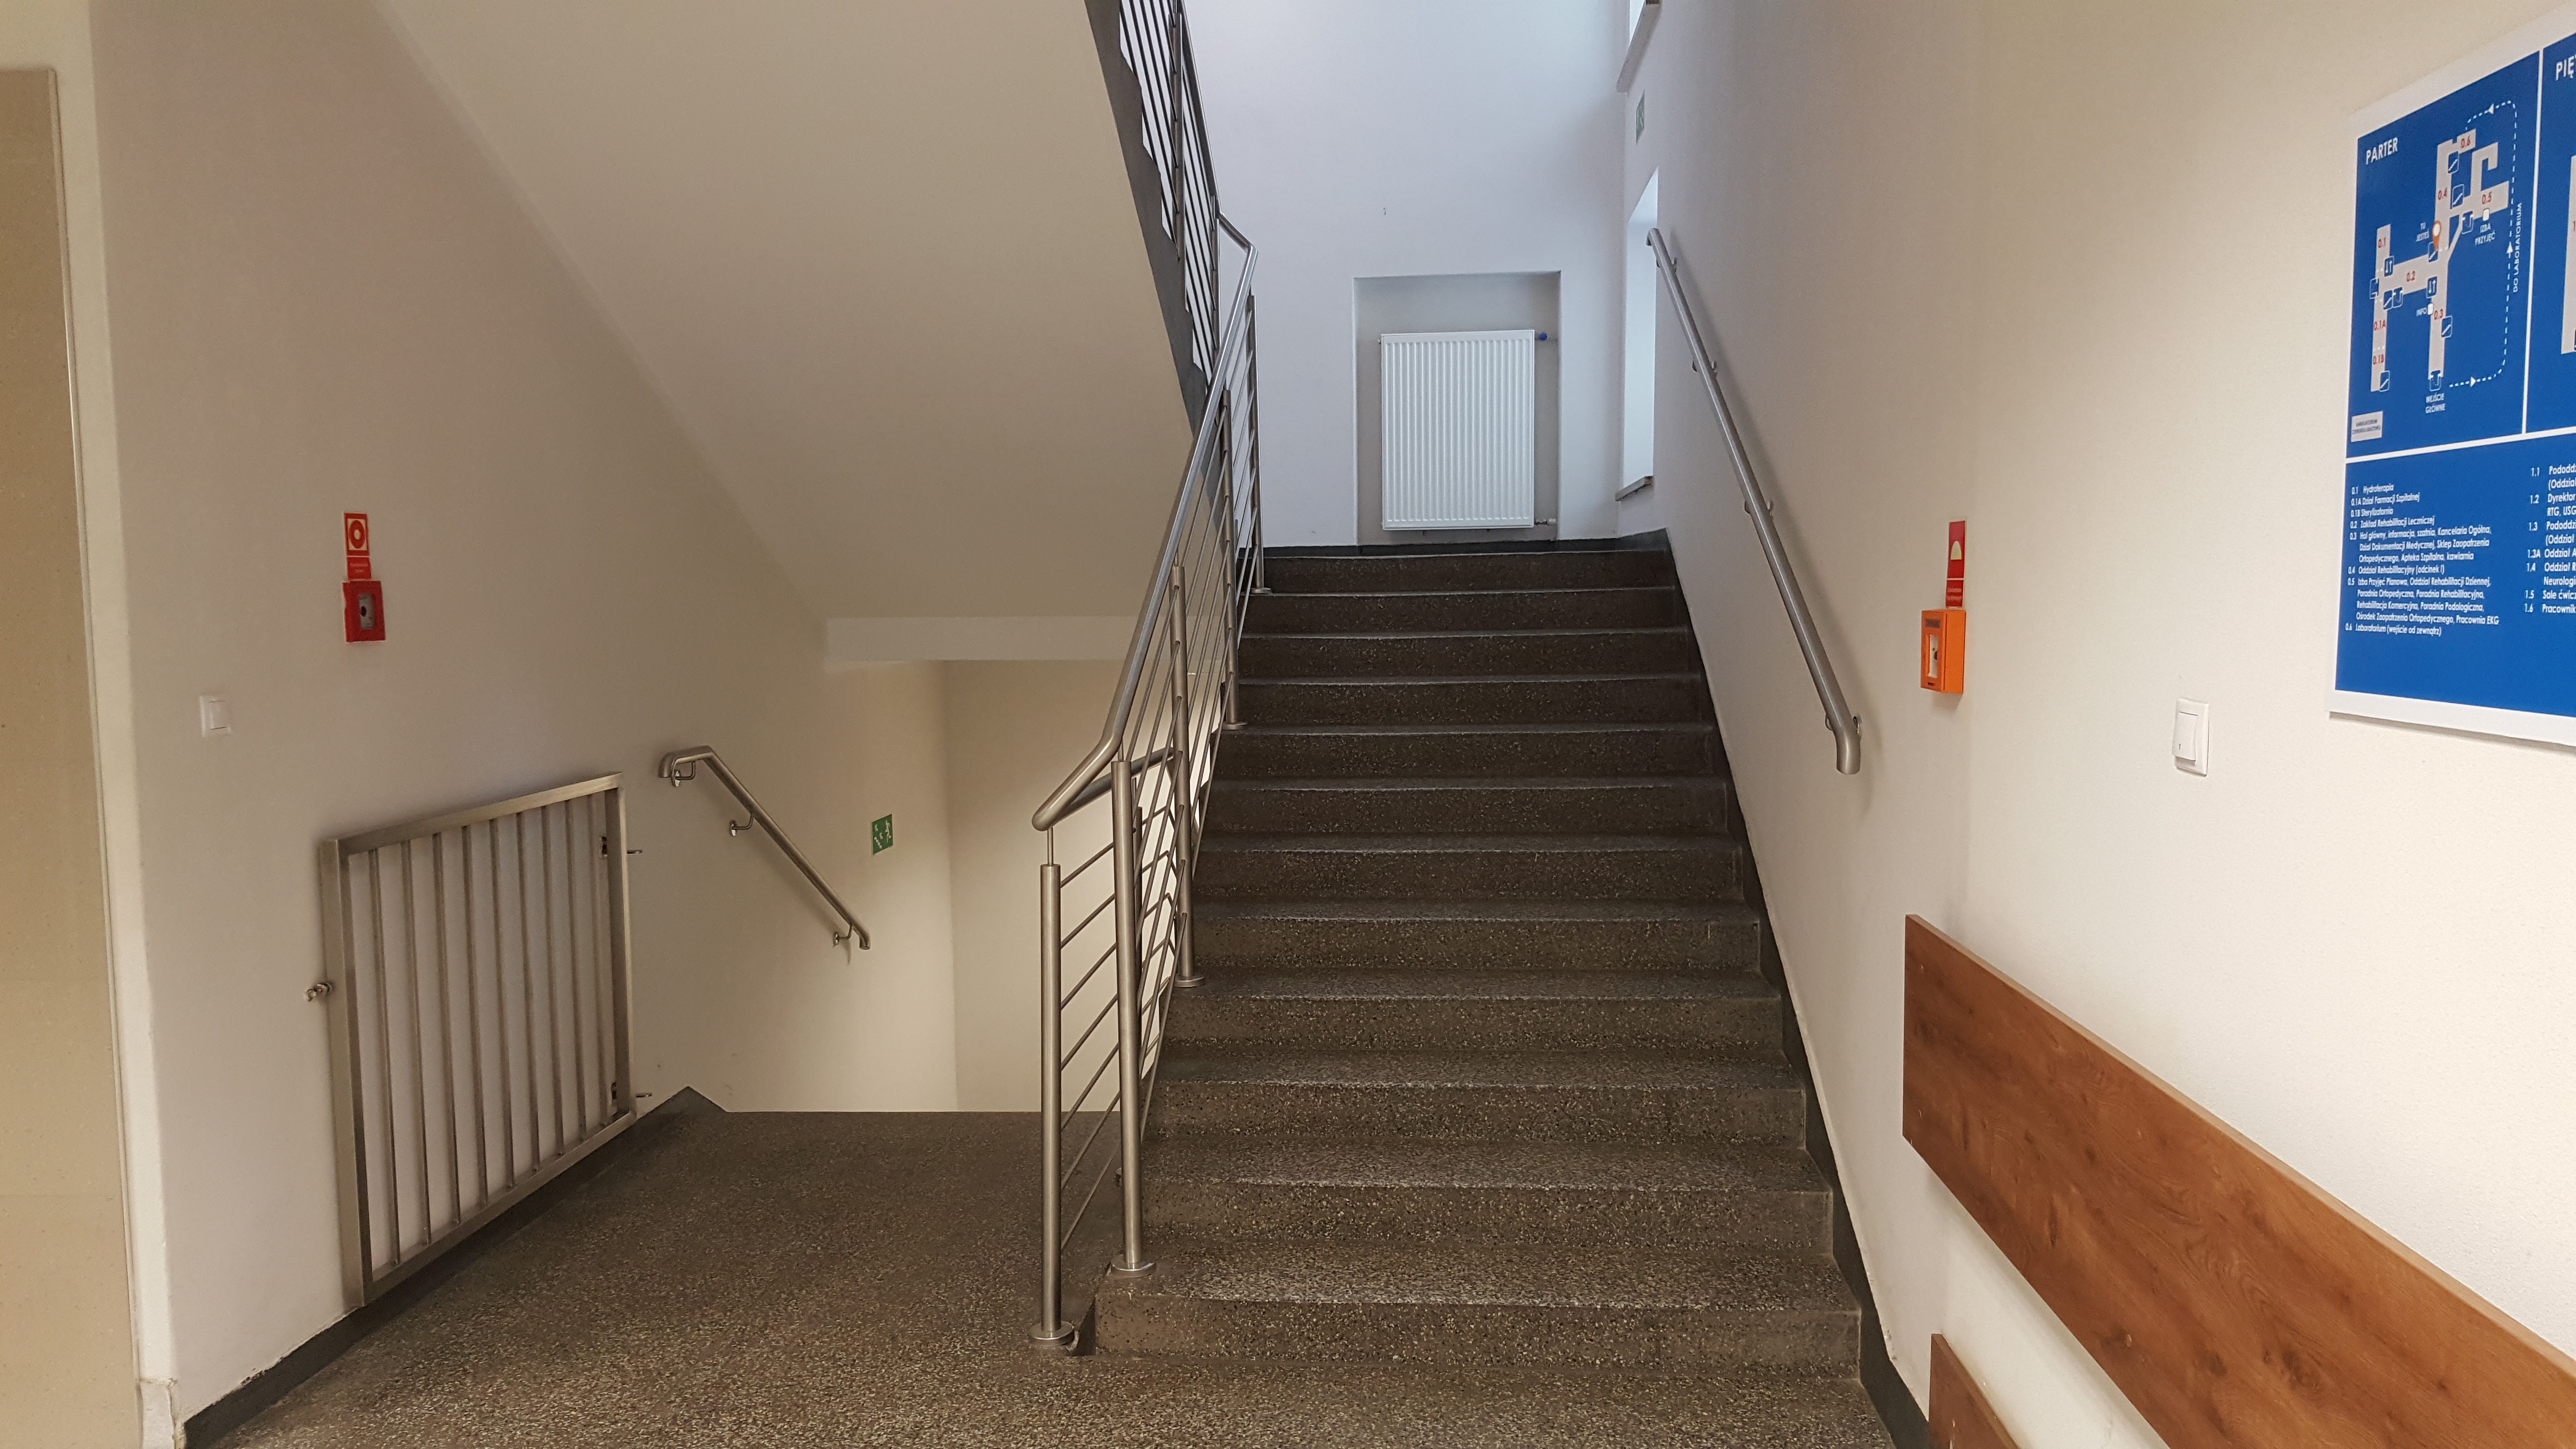 Wykonanie robót budowlanych związanych z dostosowaniem klatek schodowych w budynku głównym szpitala do wymagań ochrony przeciwpożarowej w Szpitalu w Konstancinie-Jeziornie przy ul. Wierzejewskiego 12